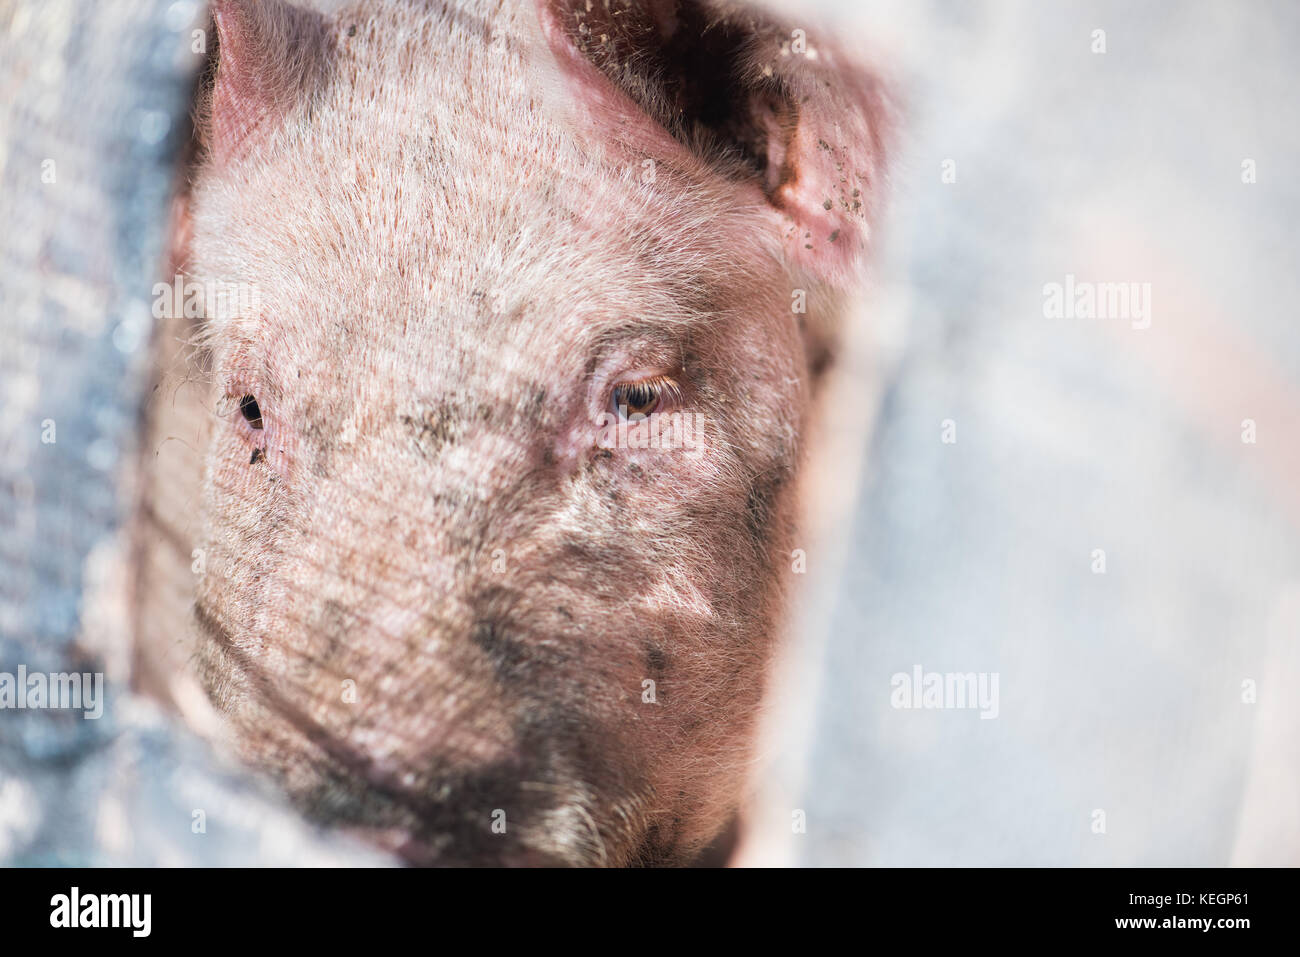 Pig behind bars Stock Photo